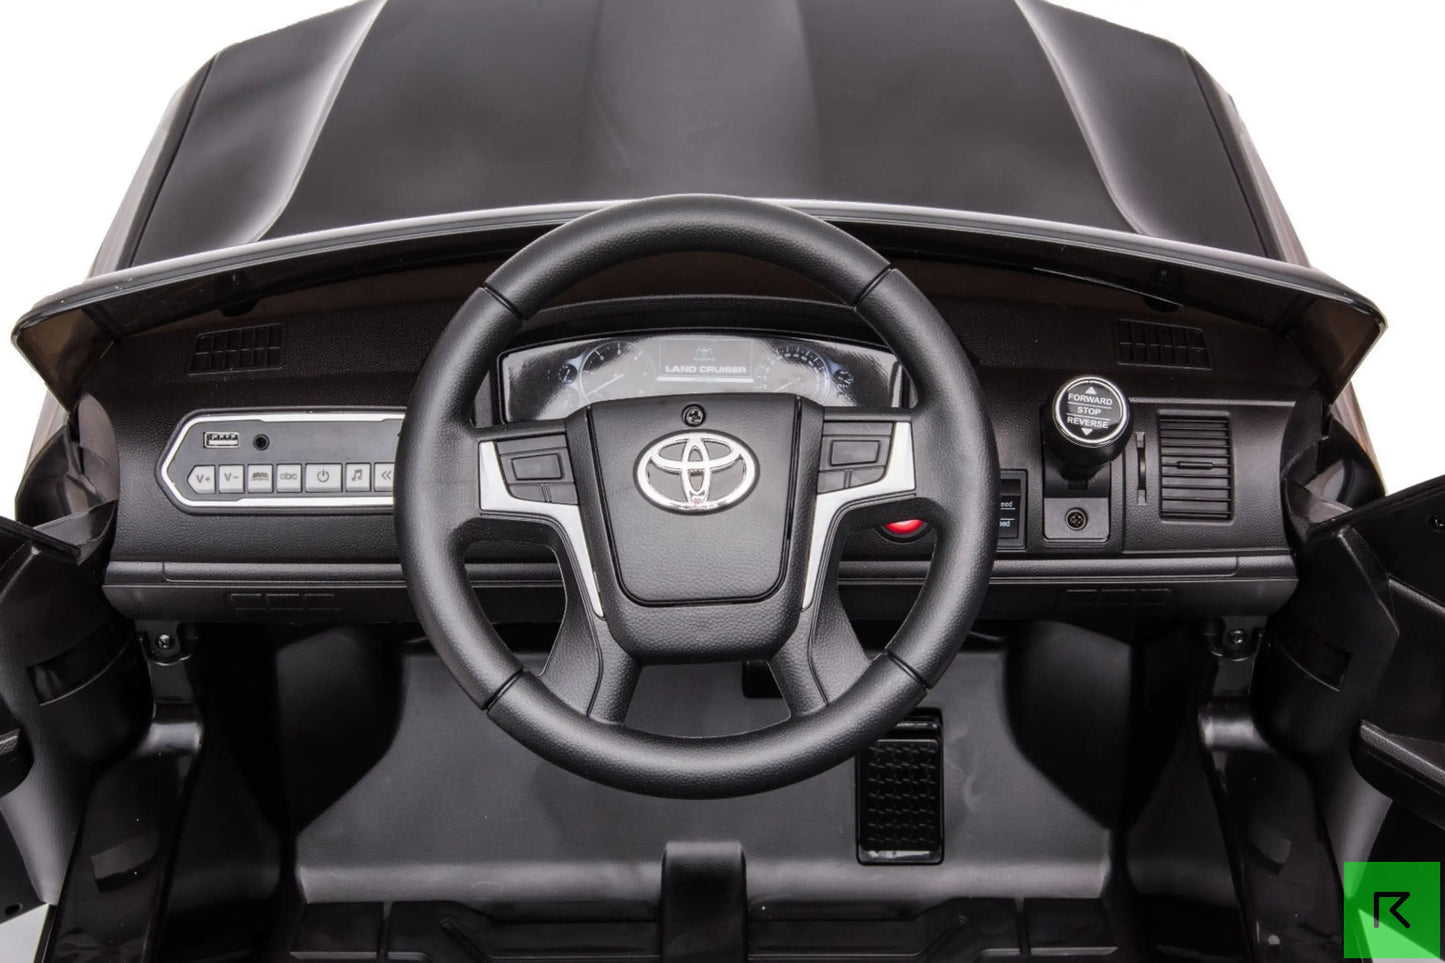 Toyota Land Cruiser Kids Black Electric Ride on Car - kids ride on car